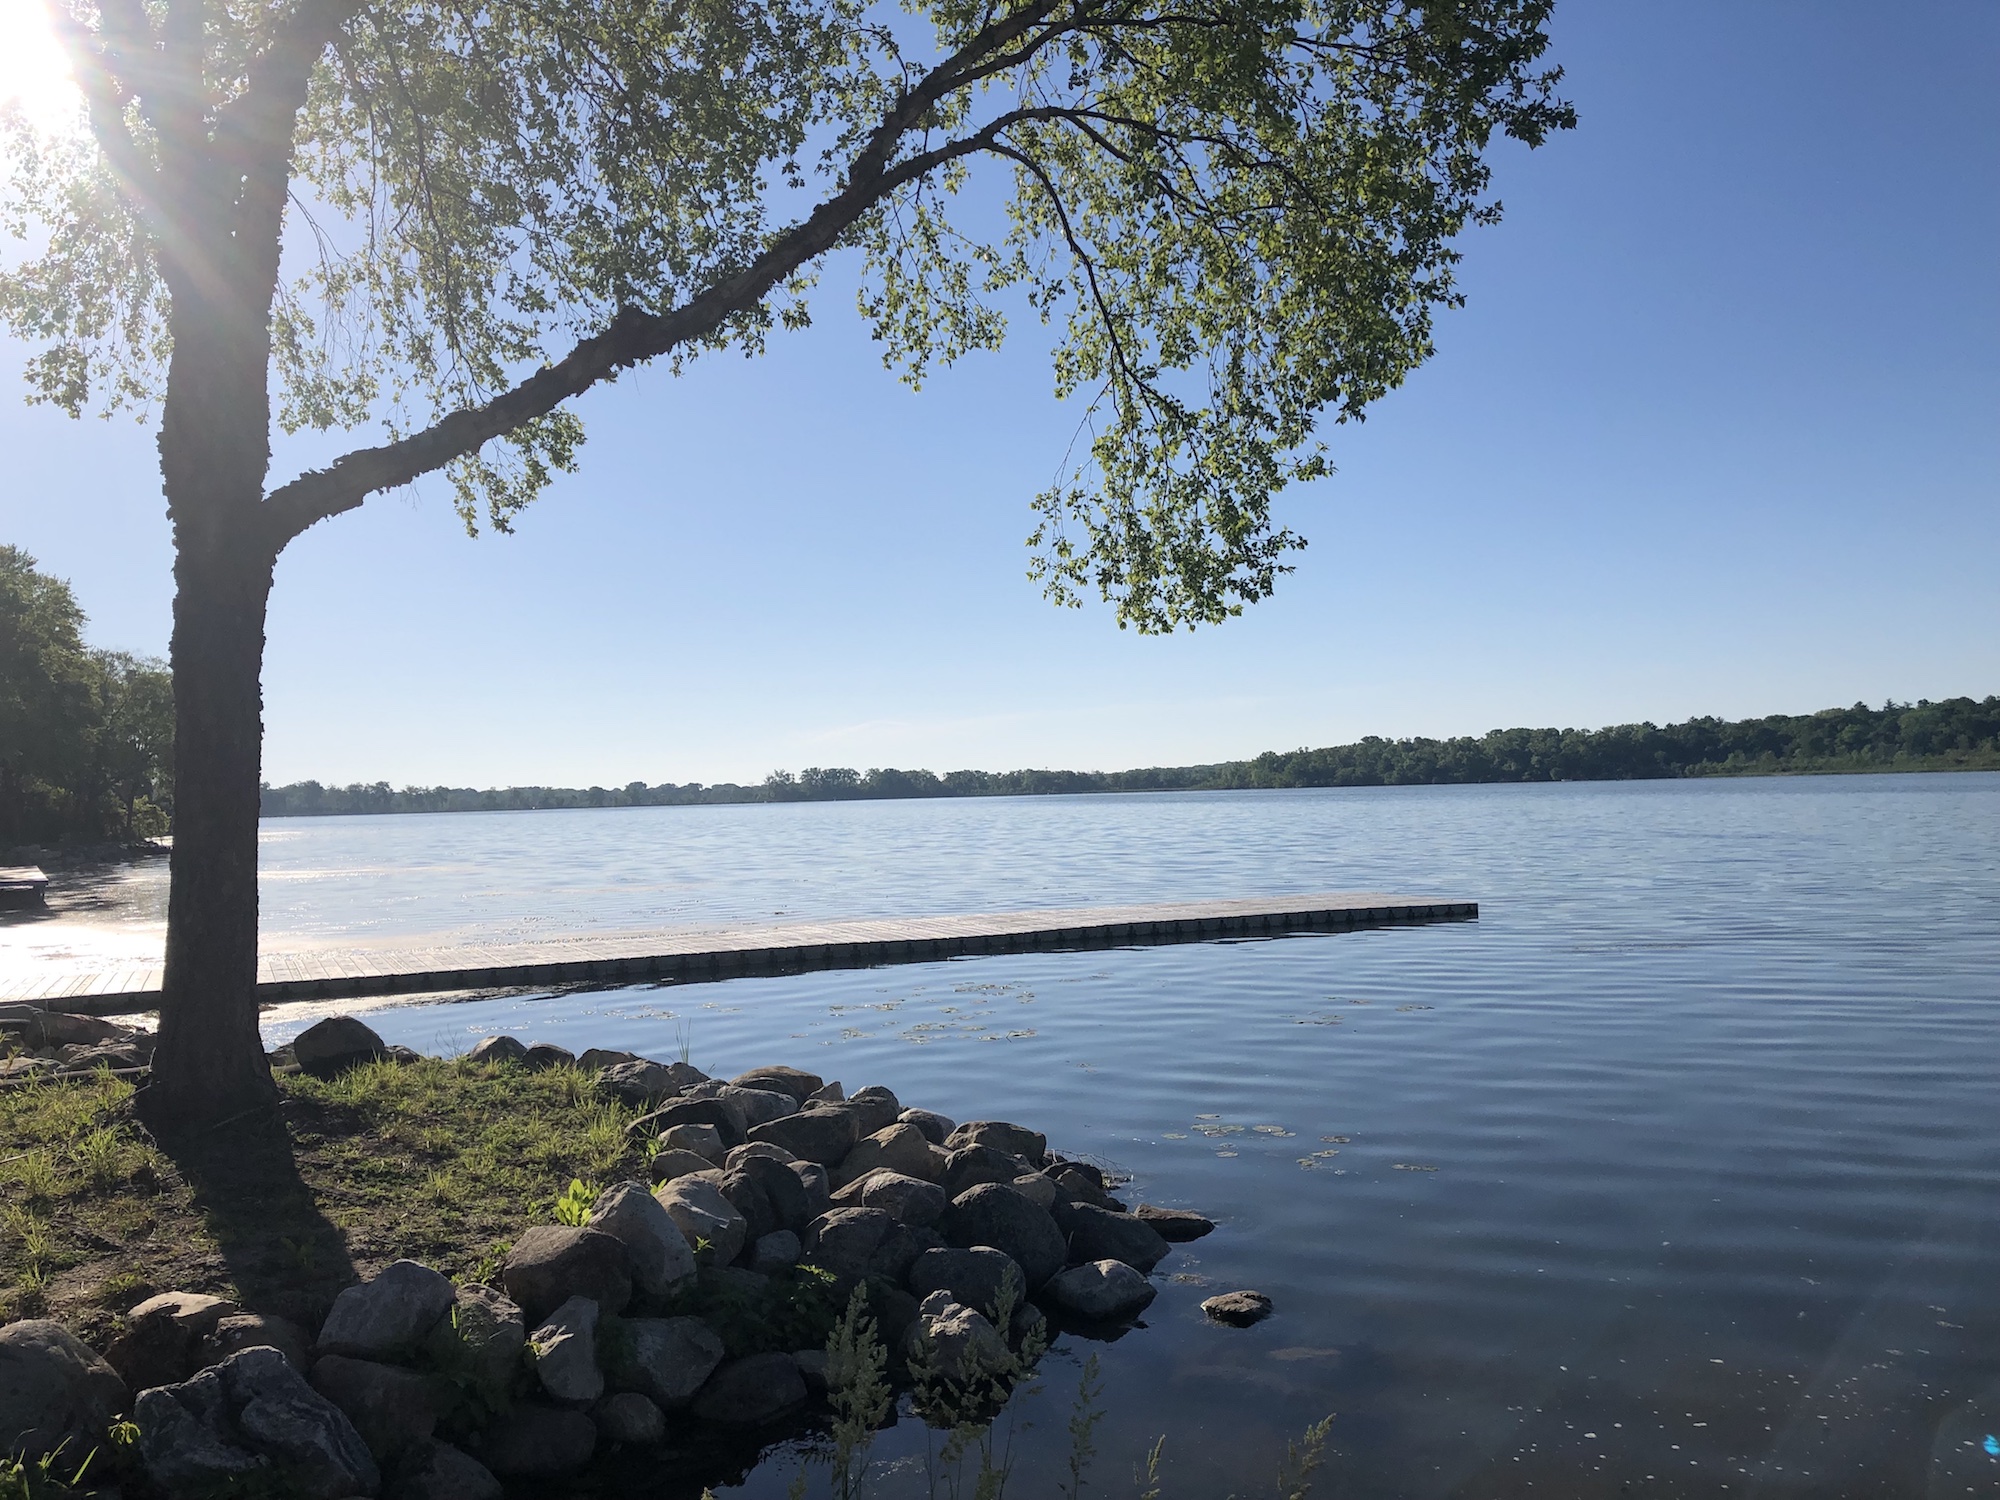 Lake Wingra on June 8, 2019.